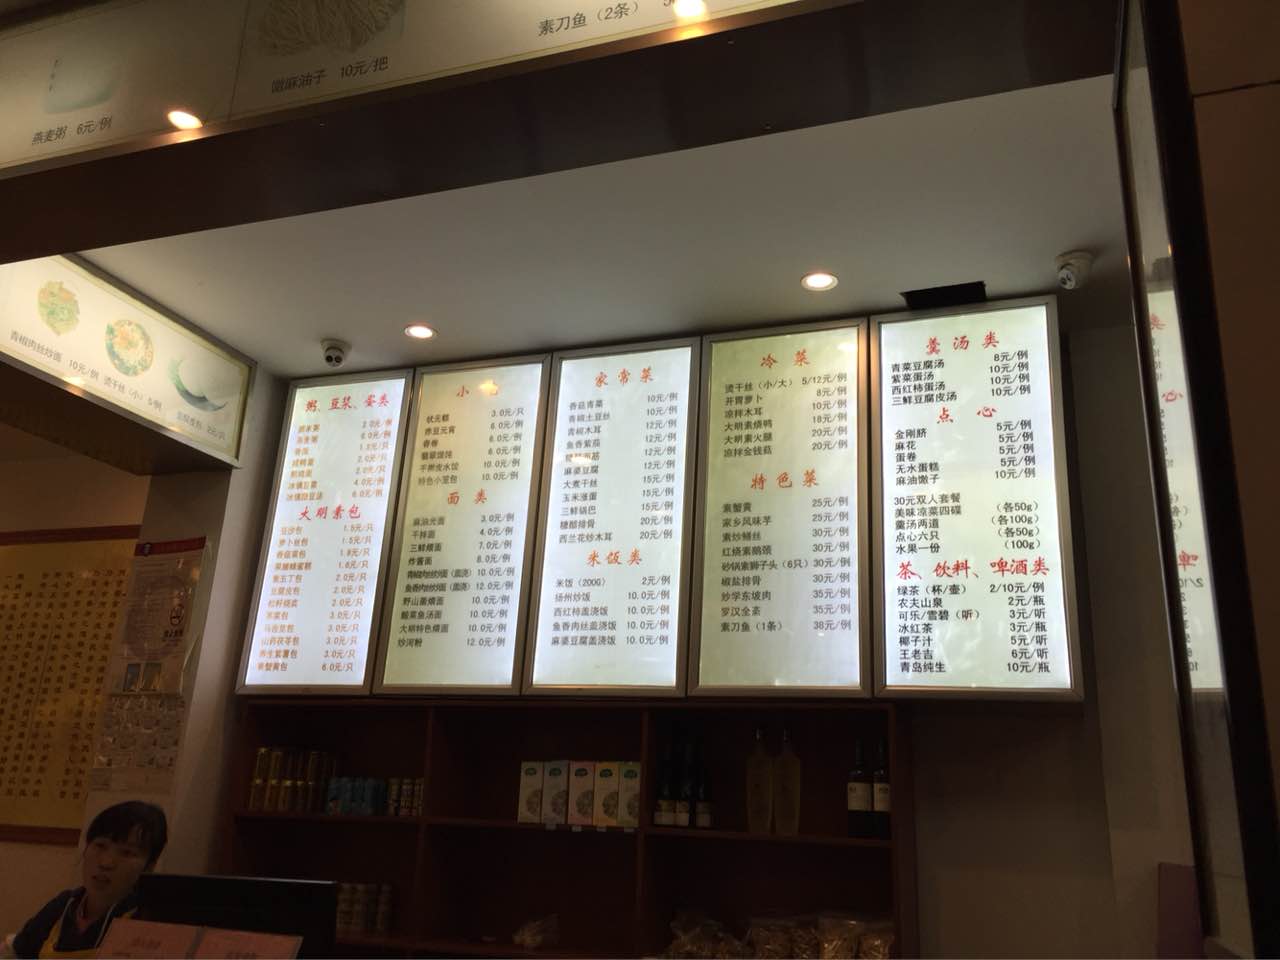 广州素食餐厅一览表图片